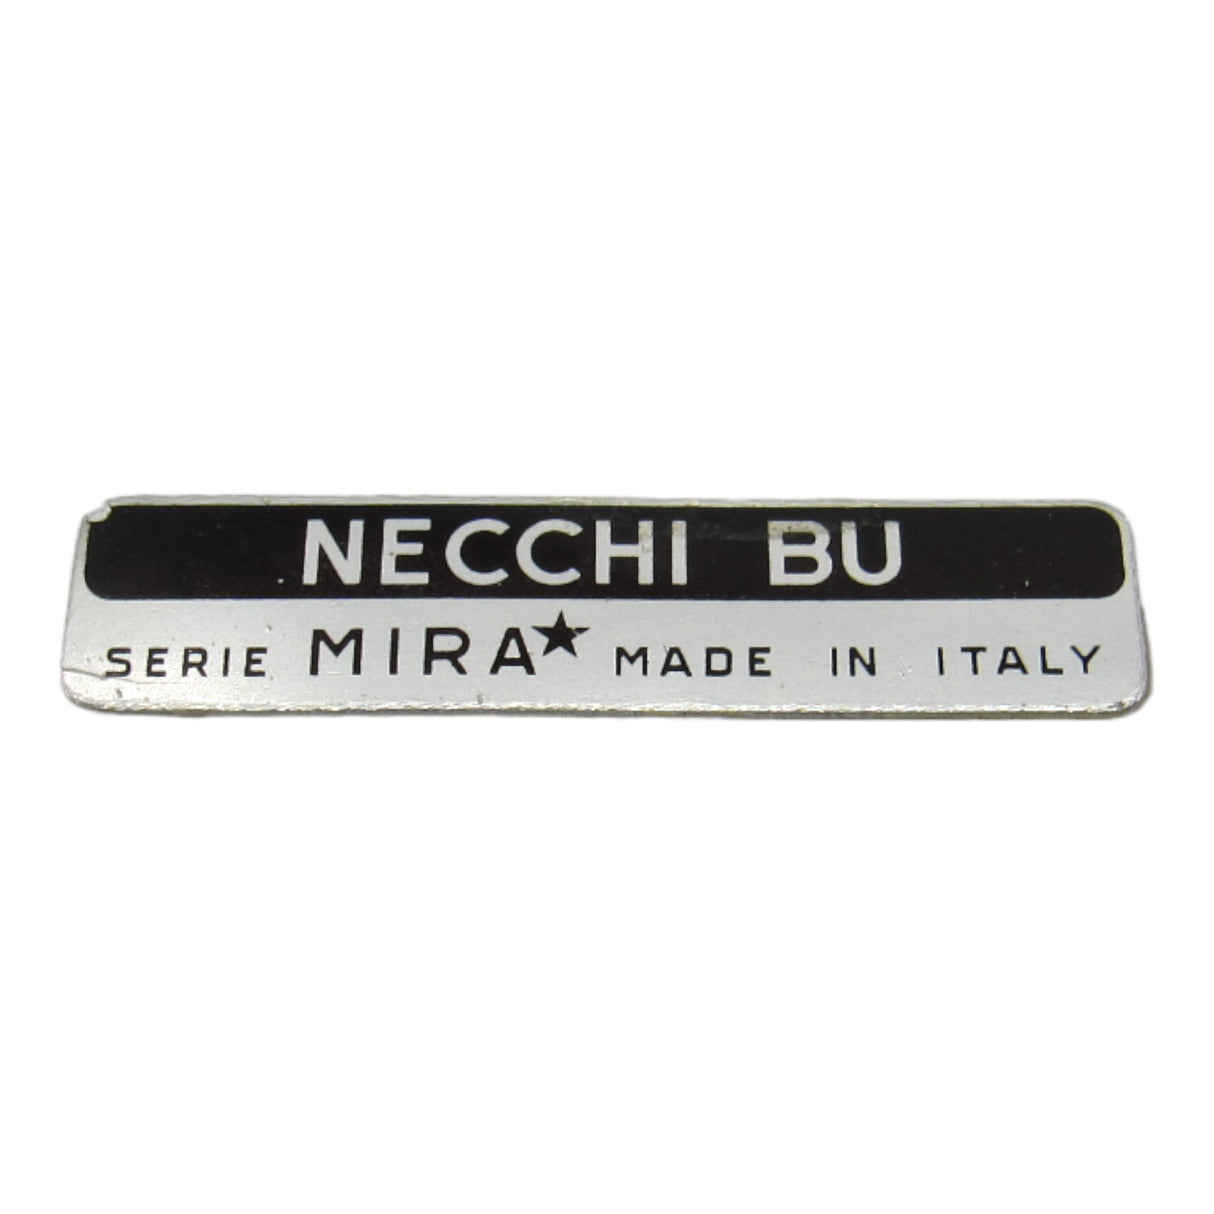 Necchi BU Mira Sewing Machine Badge